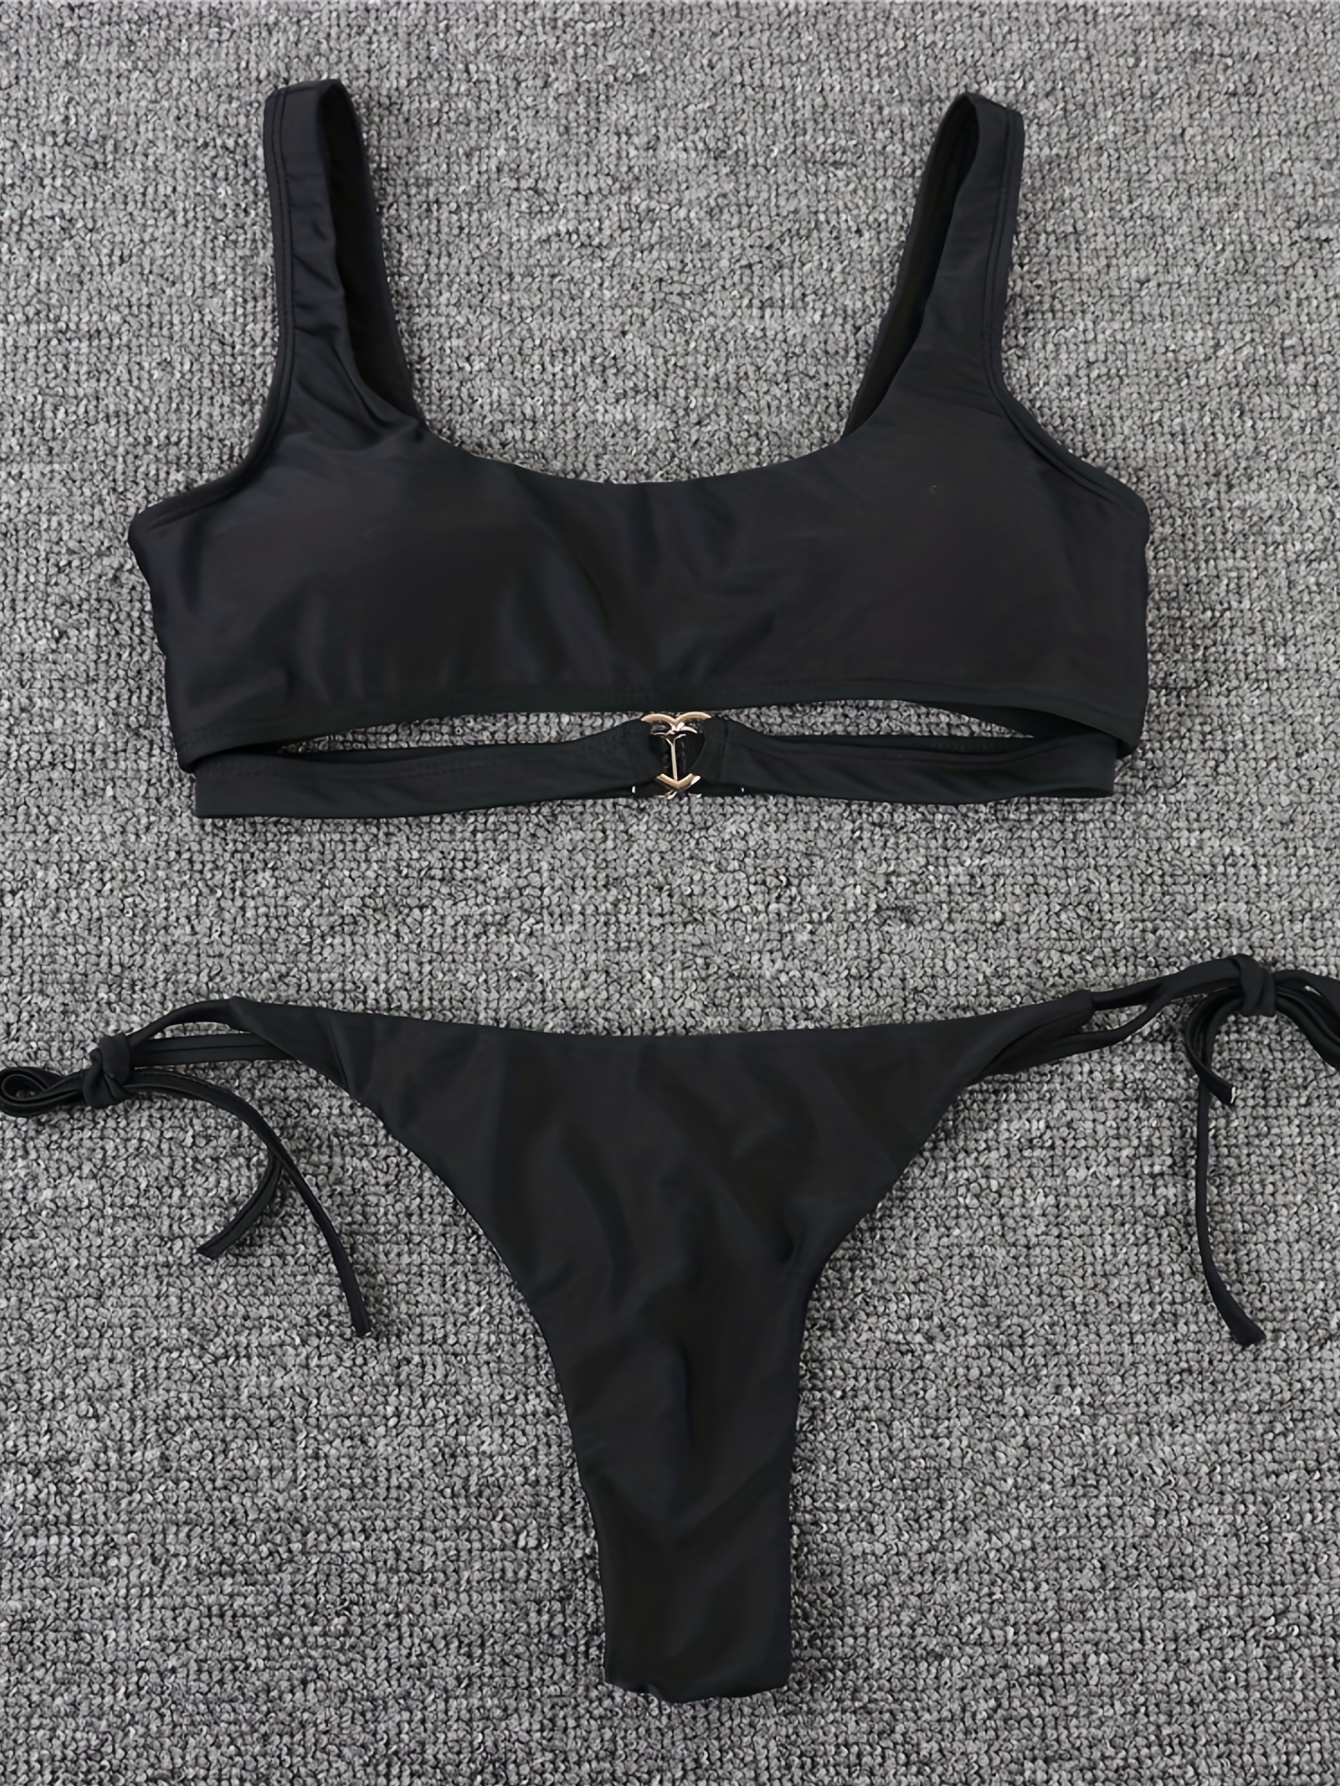  ZAFUL Women's Bandeau Bikini Set Tie Side Swimwear O